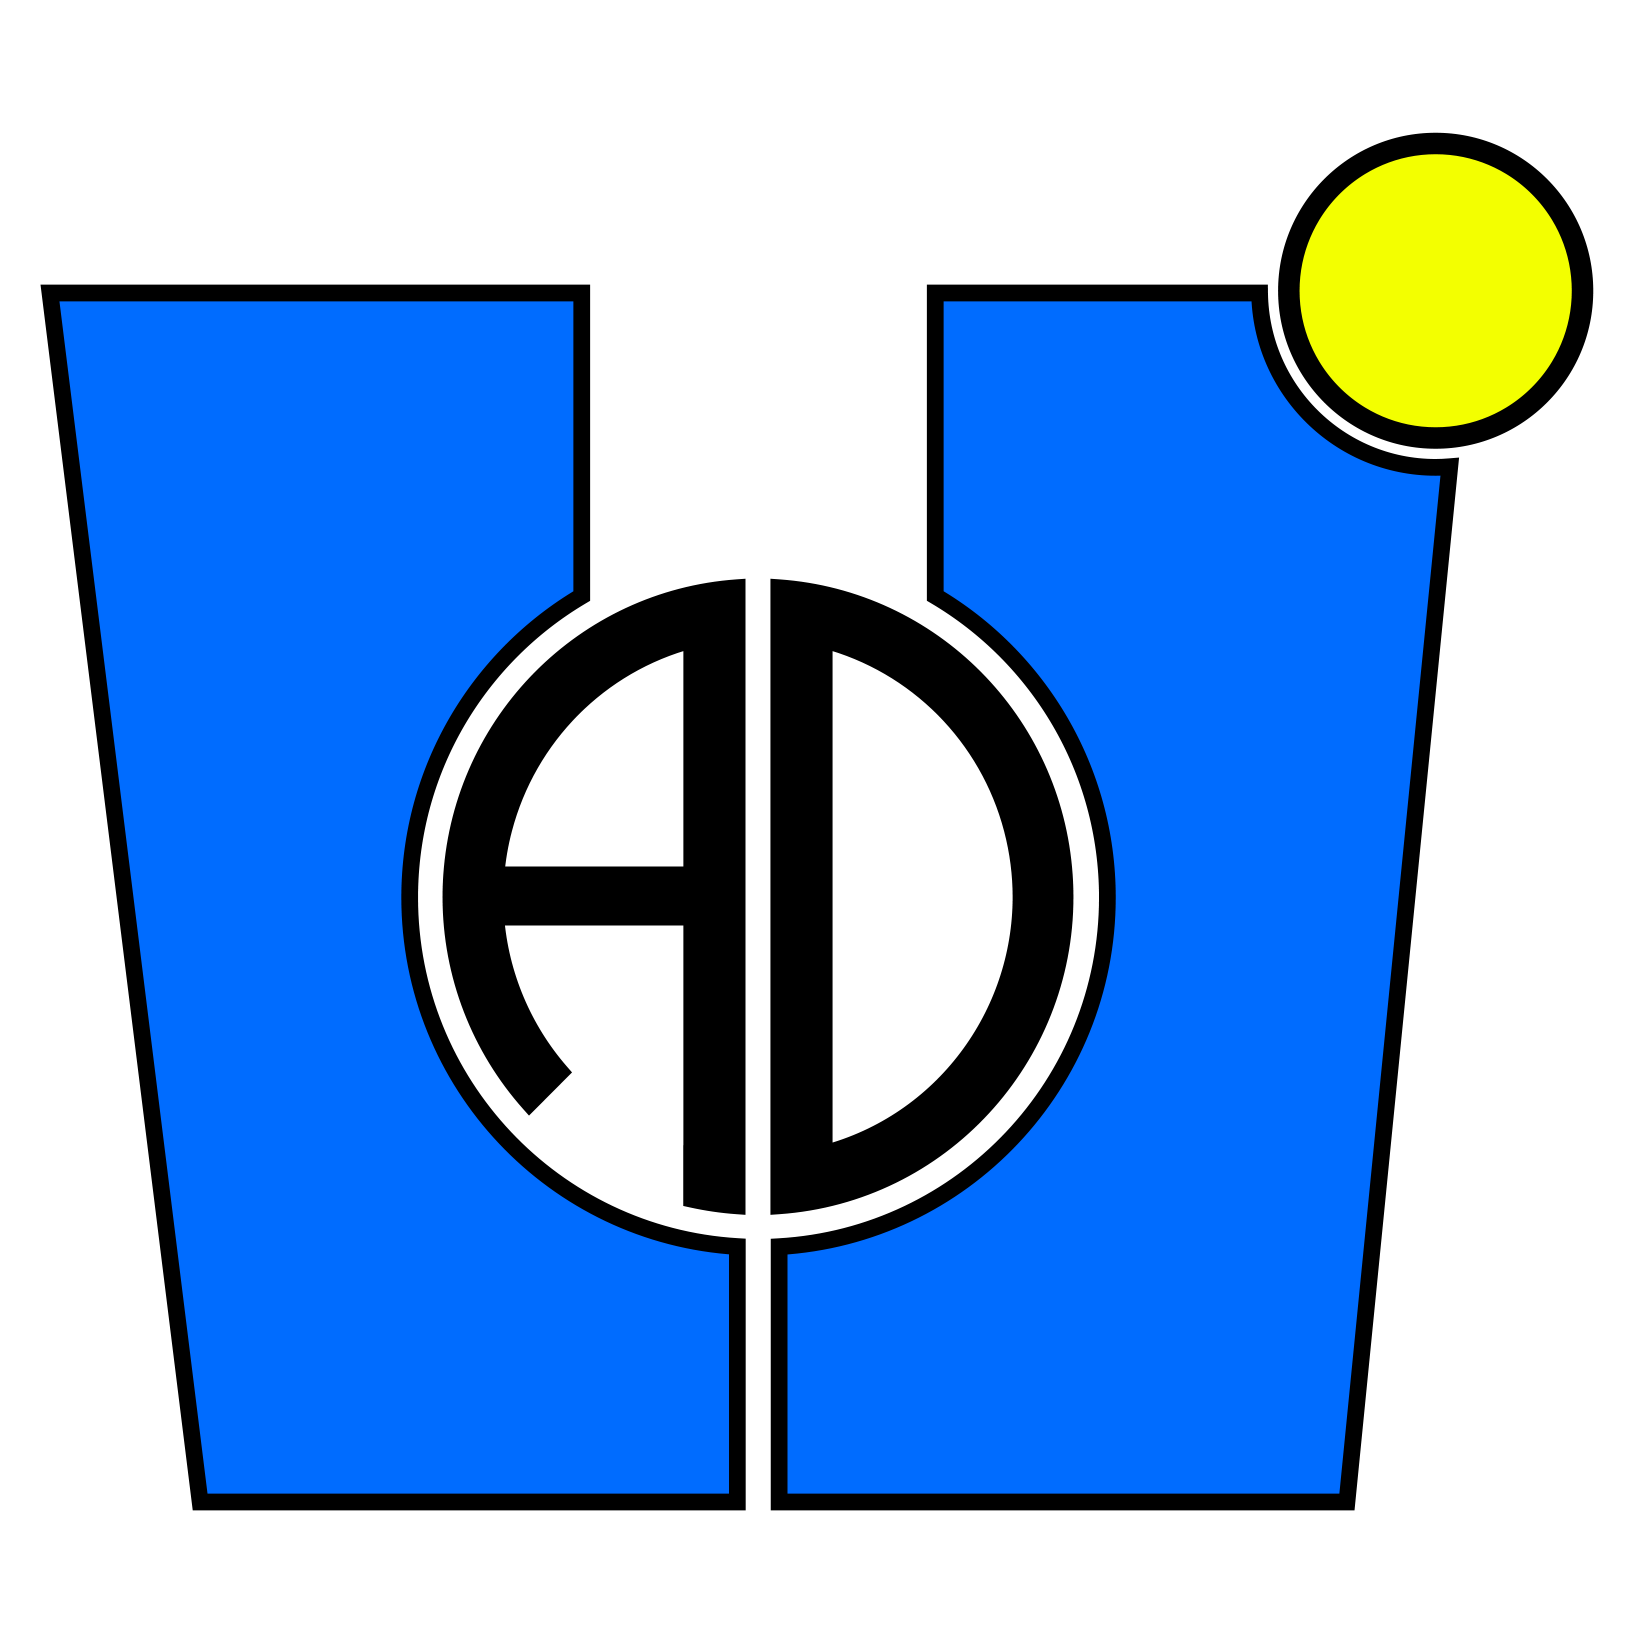 Logo LJAD